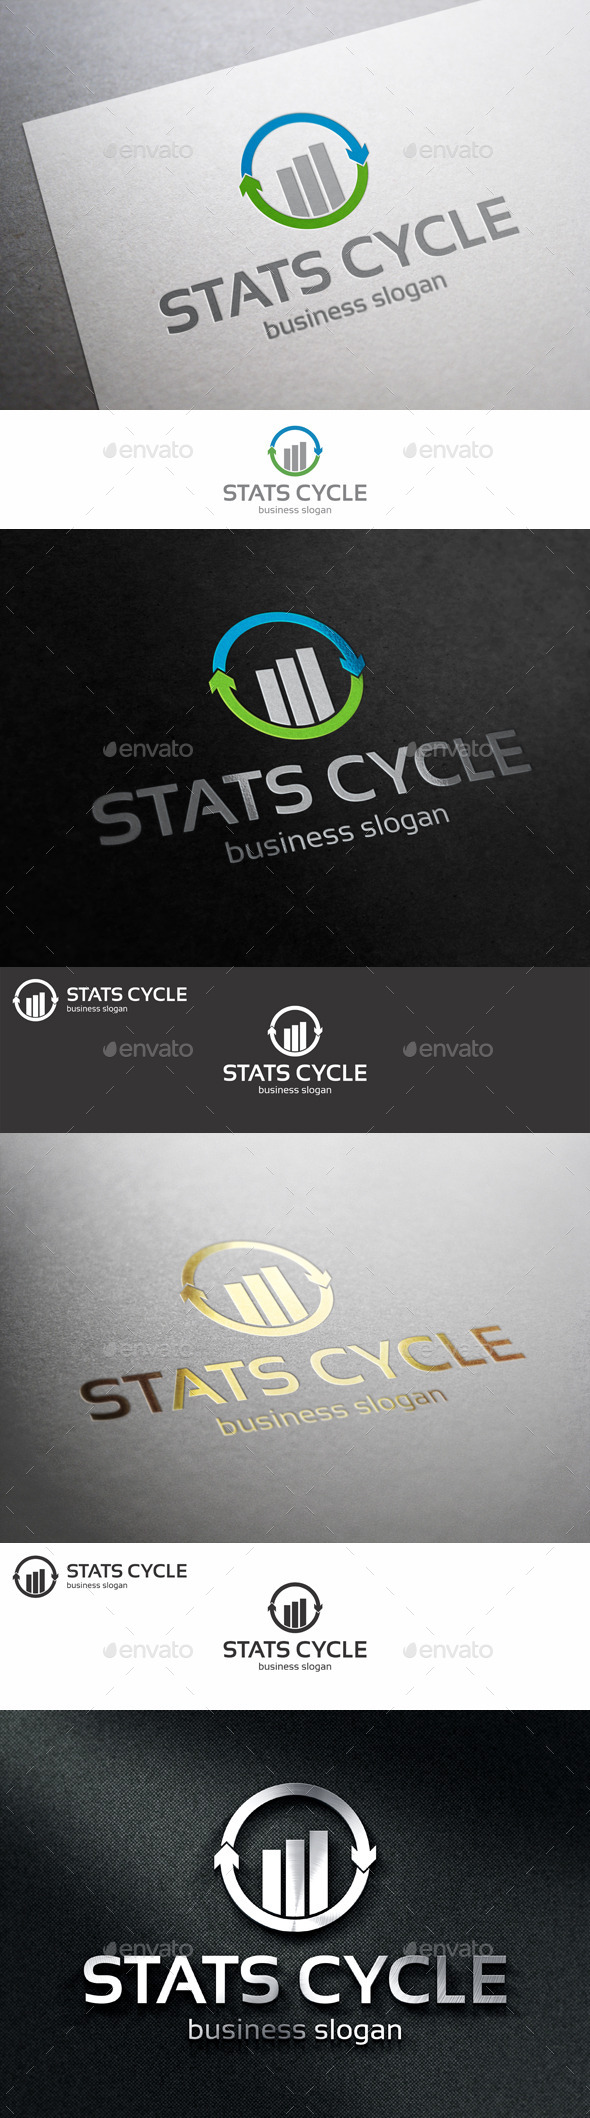 Stats Cycle Marketing Logo